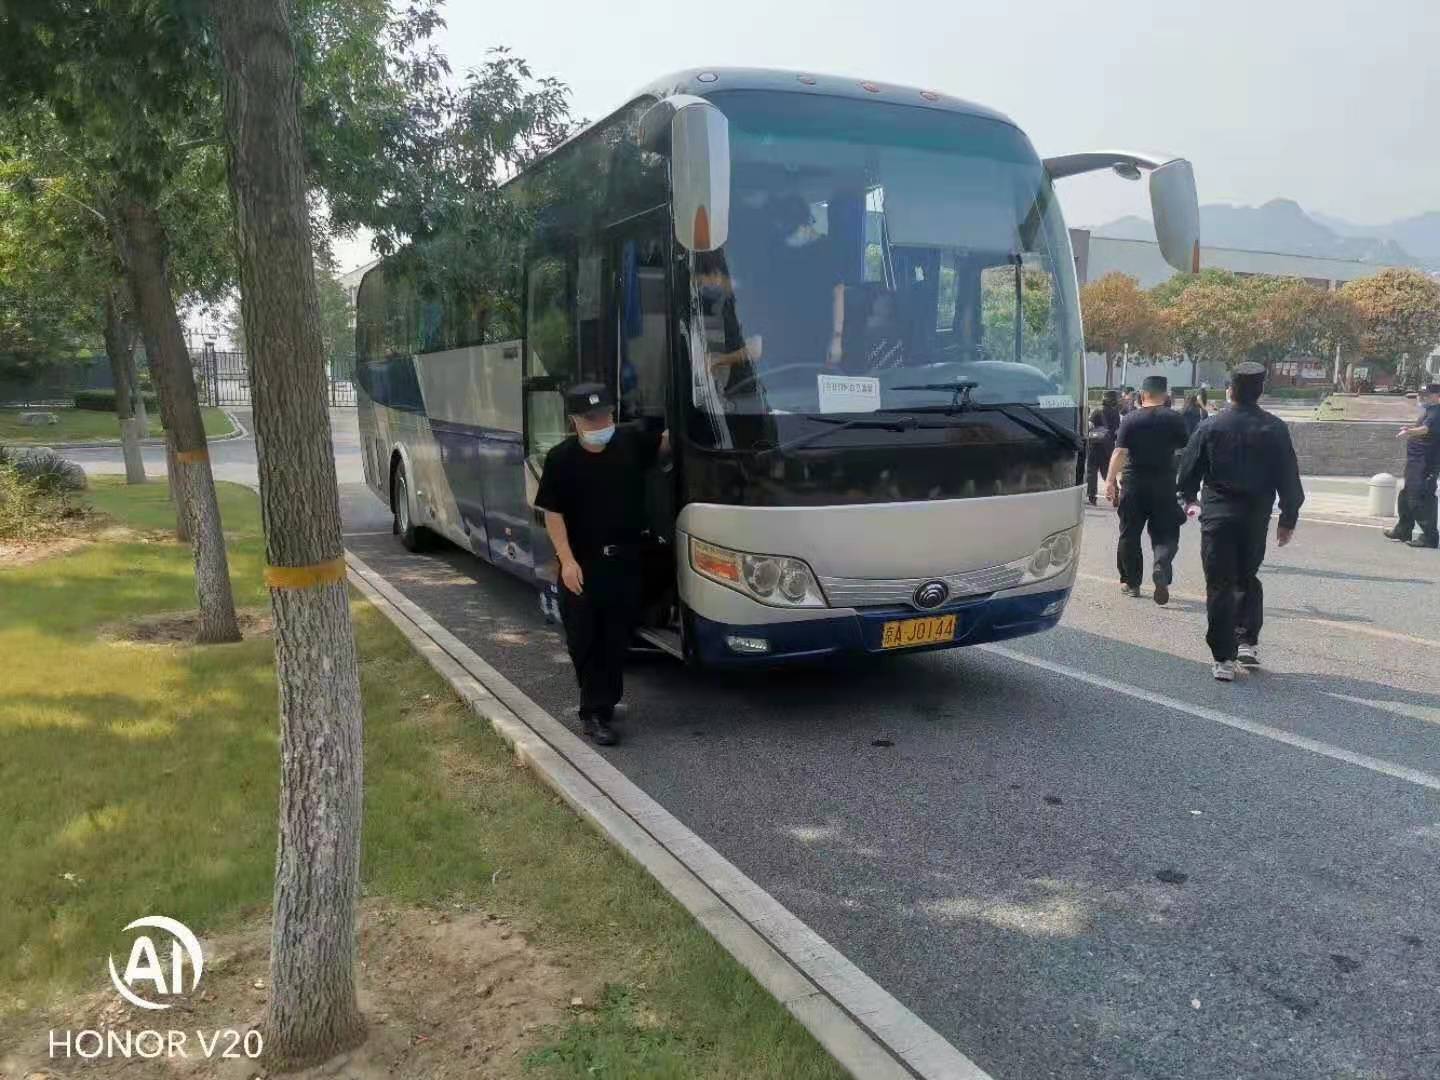 北京大巴车租赁